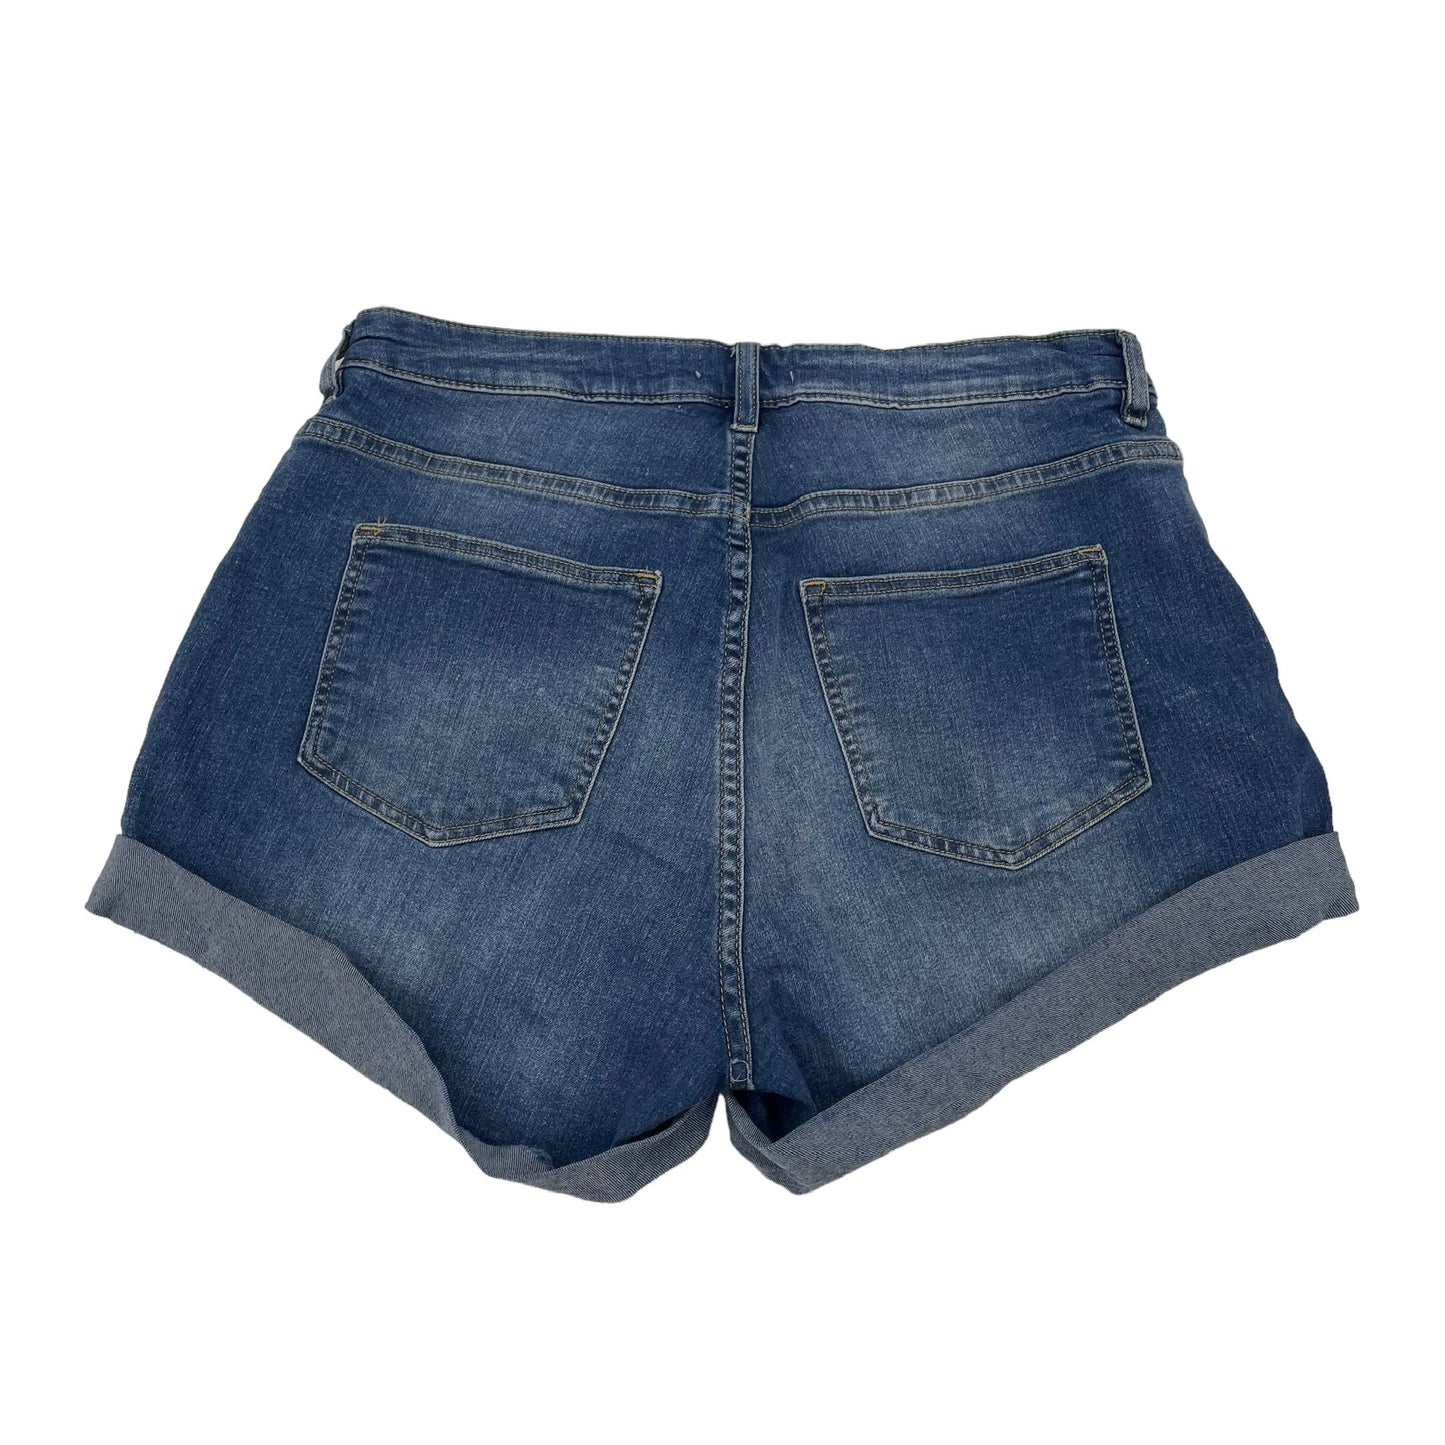 Blue Denim Shorts H&m, Size 8